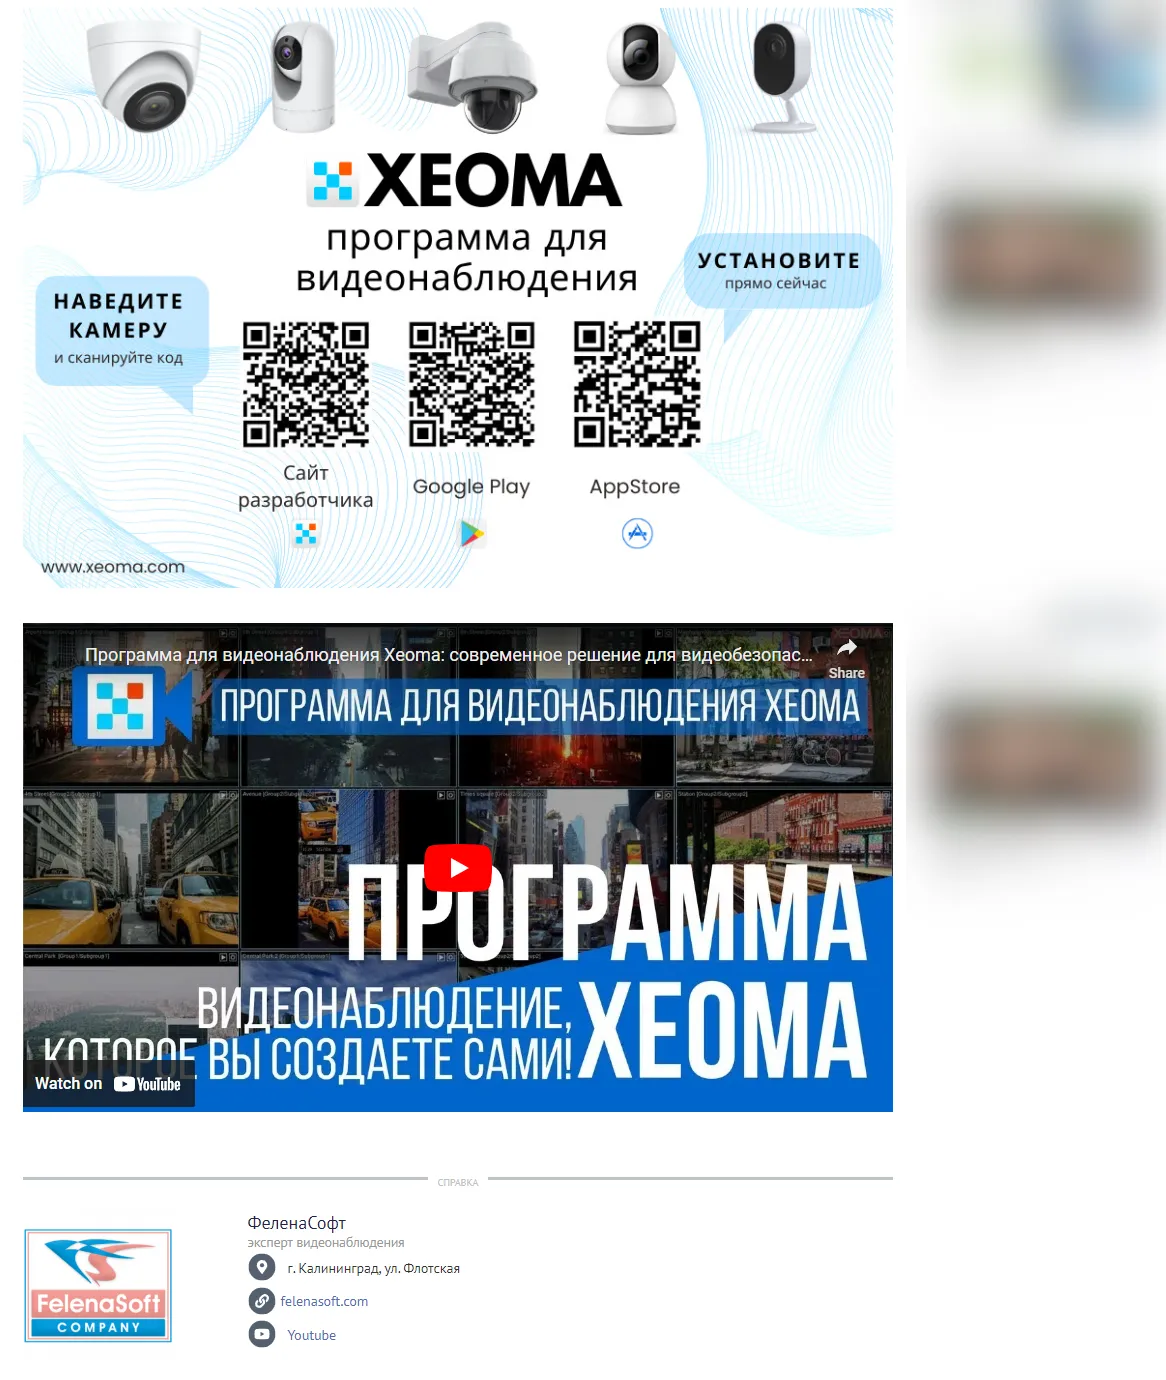 Программа для видеонаблюдения Xeoma на страницах новостного портала Новый Калининград. QR-коды для скачивания и видео